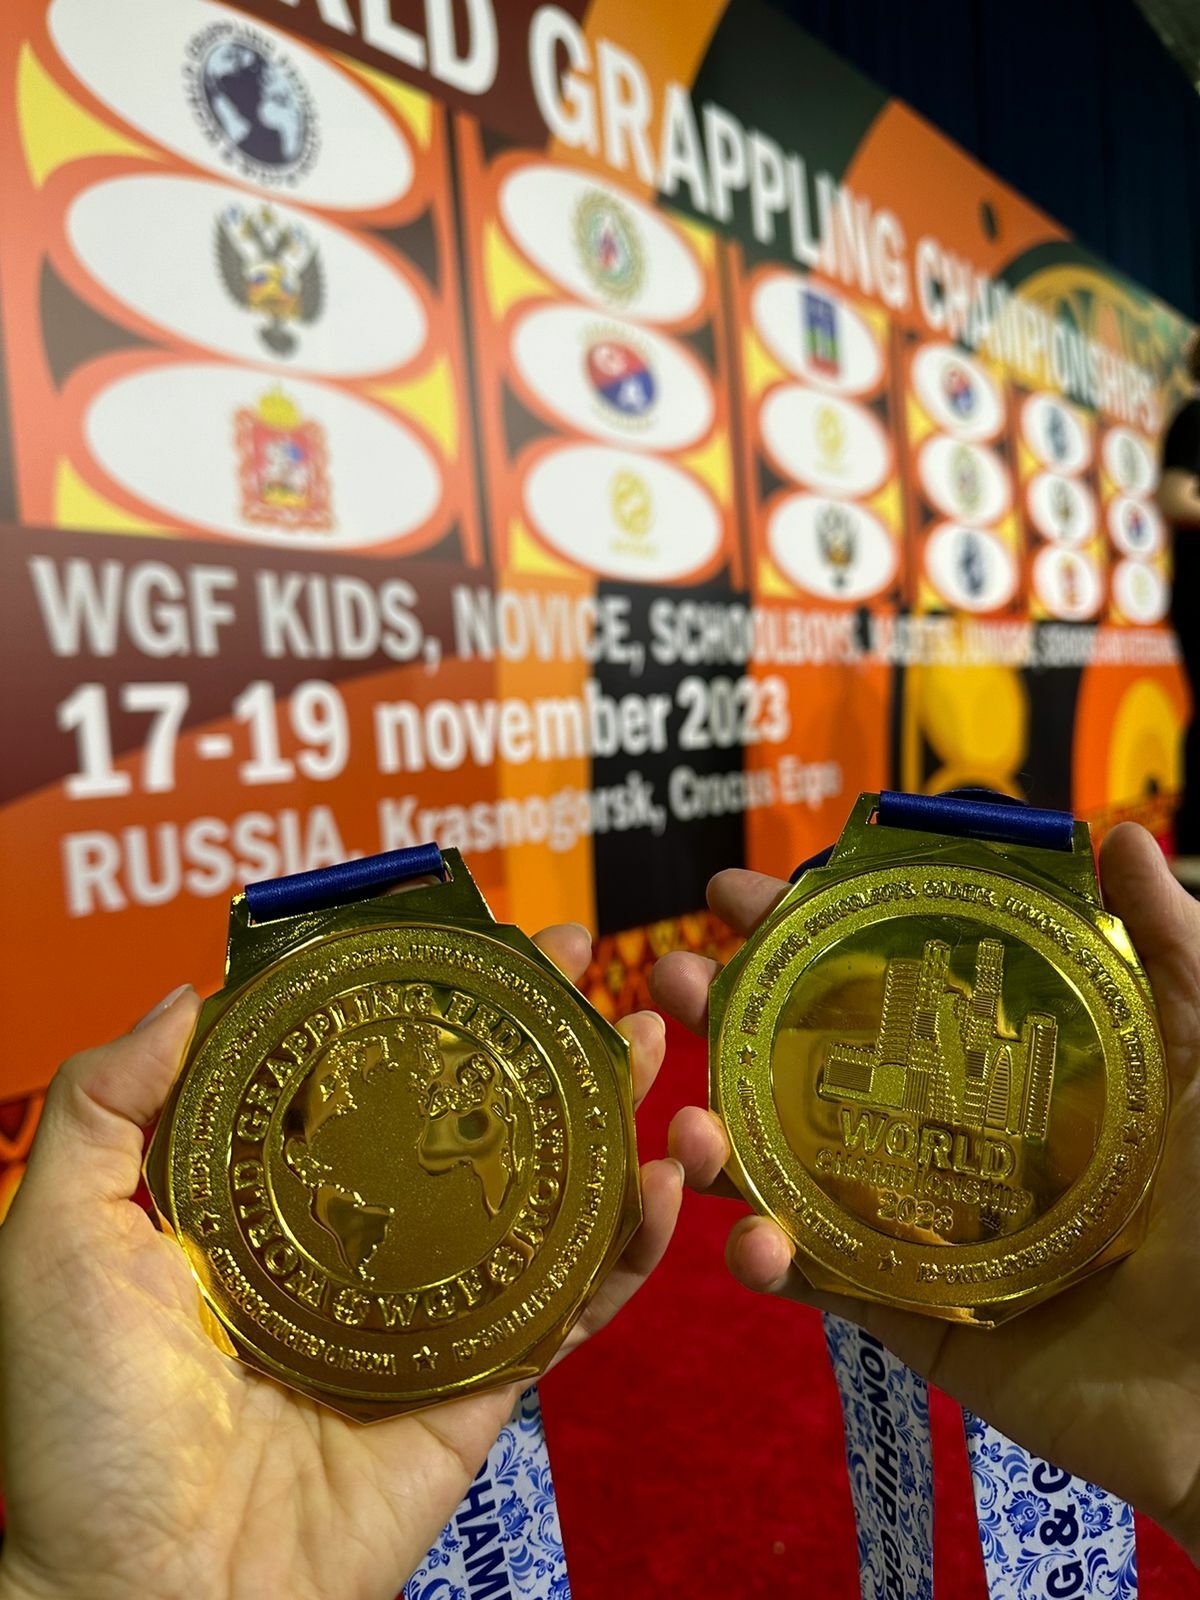 Спортсменки Стерлитамакского района завоевали золотые медали на открытом чемпионате мира по грэпплингу